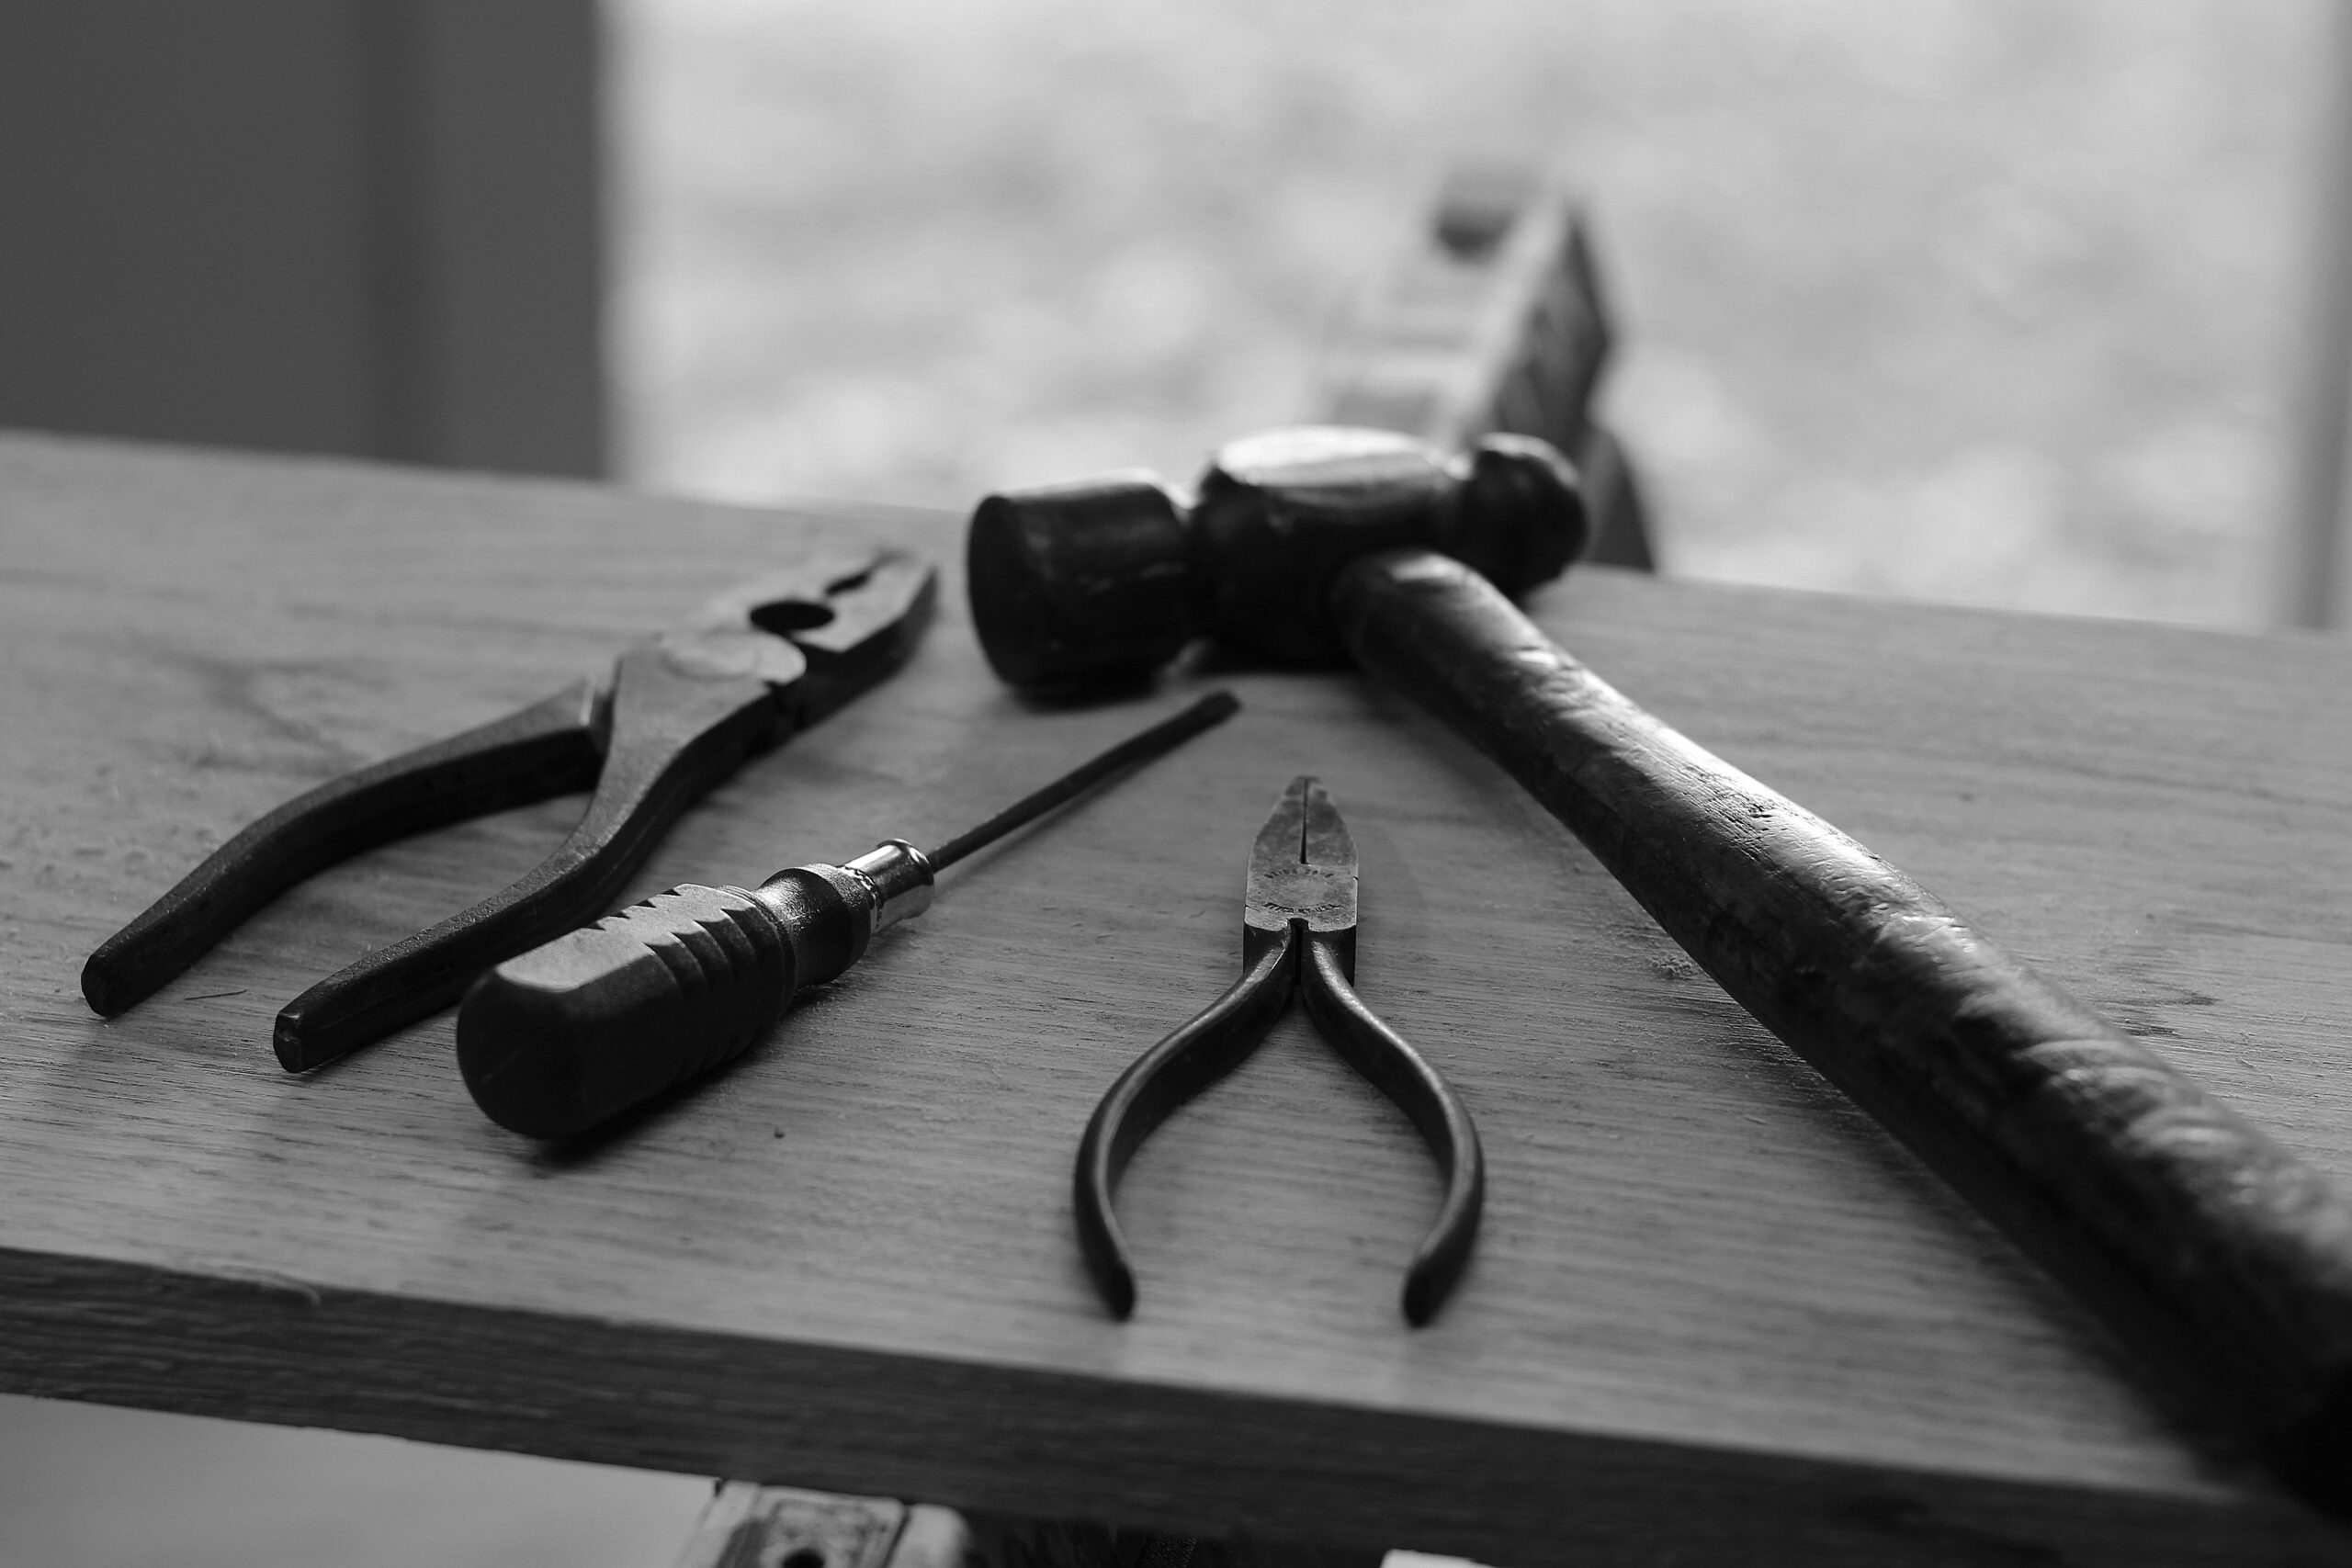 découvrez notre gamme d'outils de haute qualité pour tous vos besoins en bricolage, réparation et construction. trouvez les outils parfaits pour chaque tâche avec notre sélection variée.